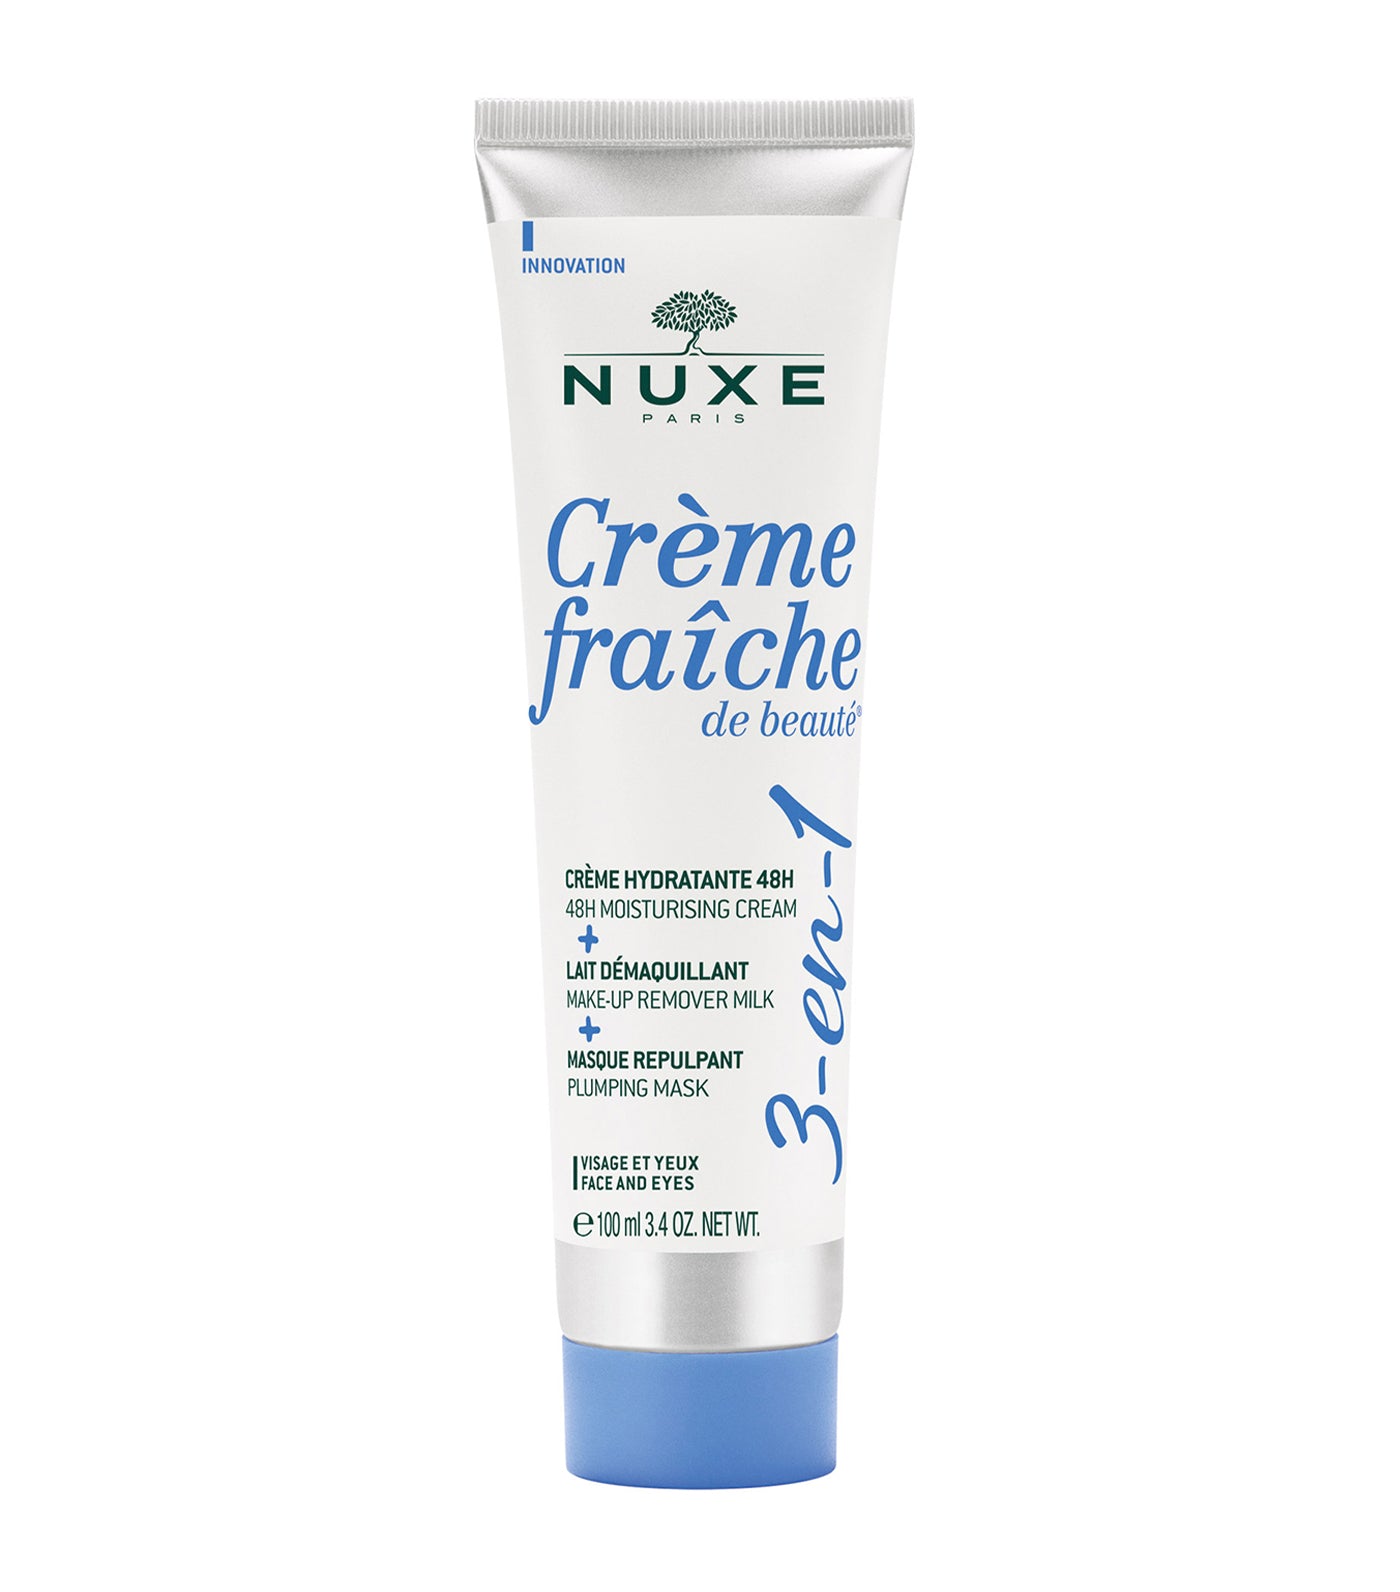 Crème fraîche de beauté® 3-in-1, 48H Moisturising Cream, Make-Up Remover Milk, Plumping Mask